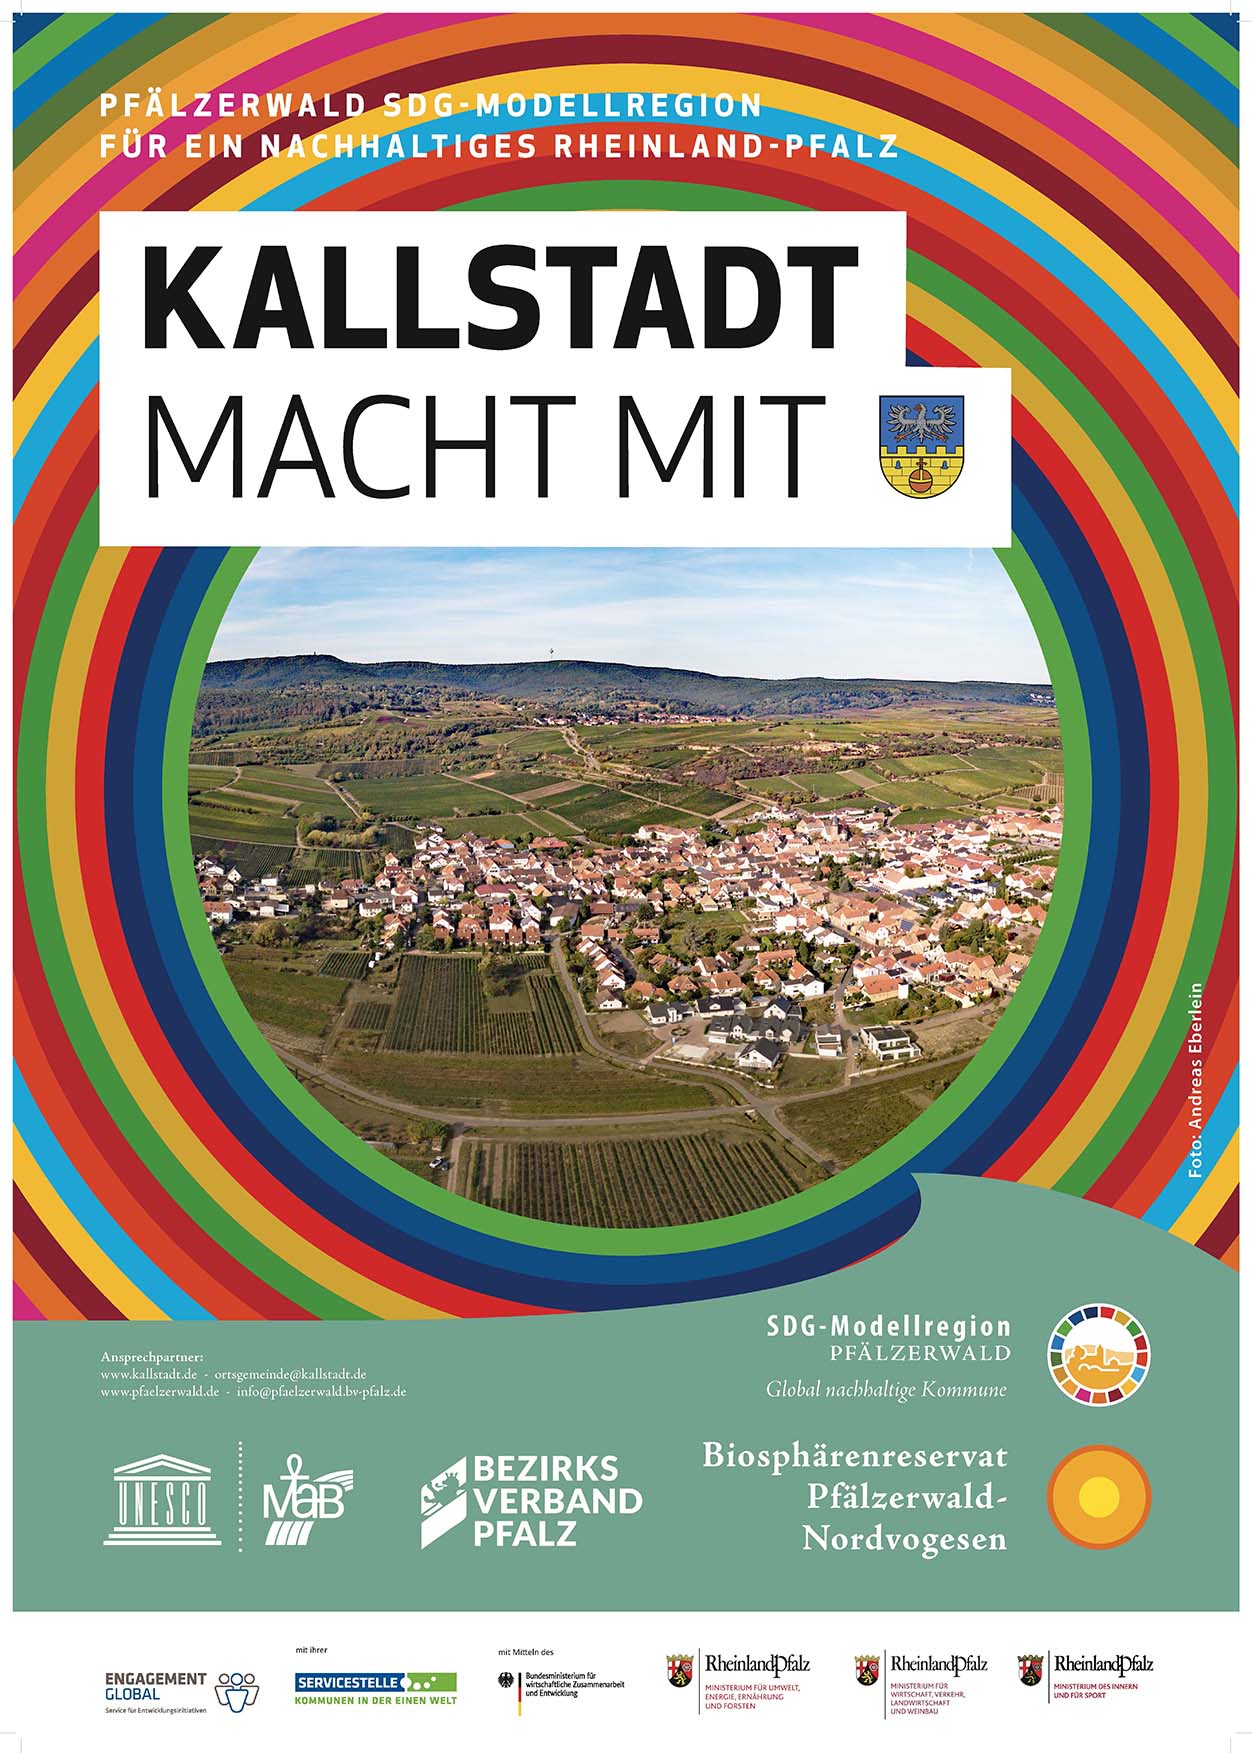 Kallstadt